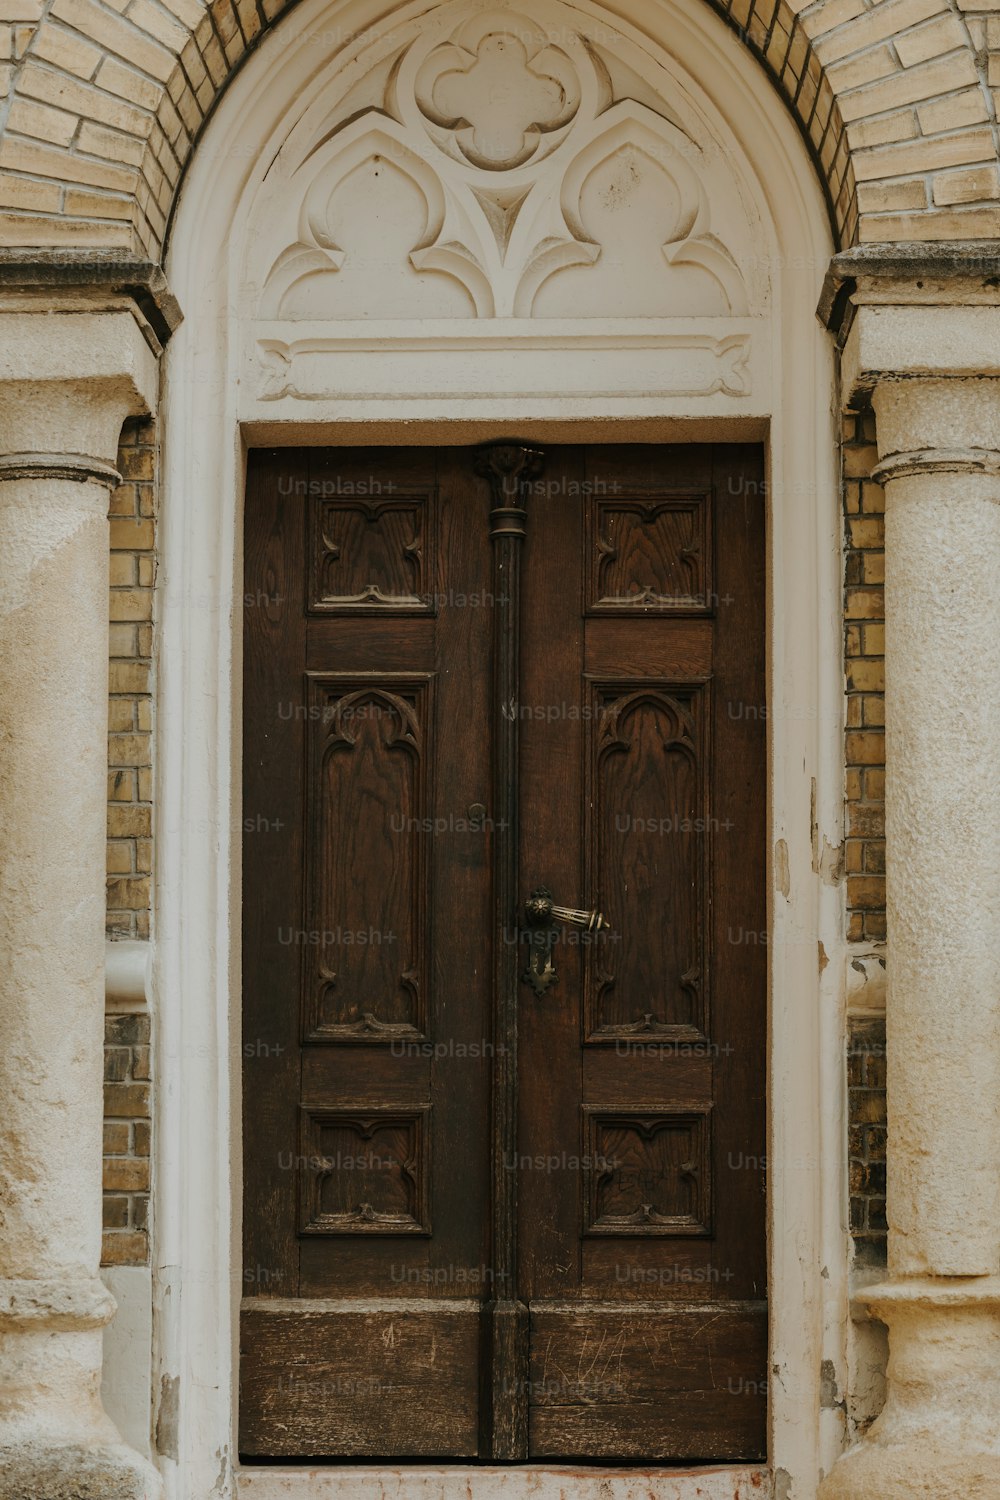 나란히 앉아있는 두 개의 갈색 문